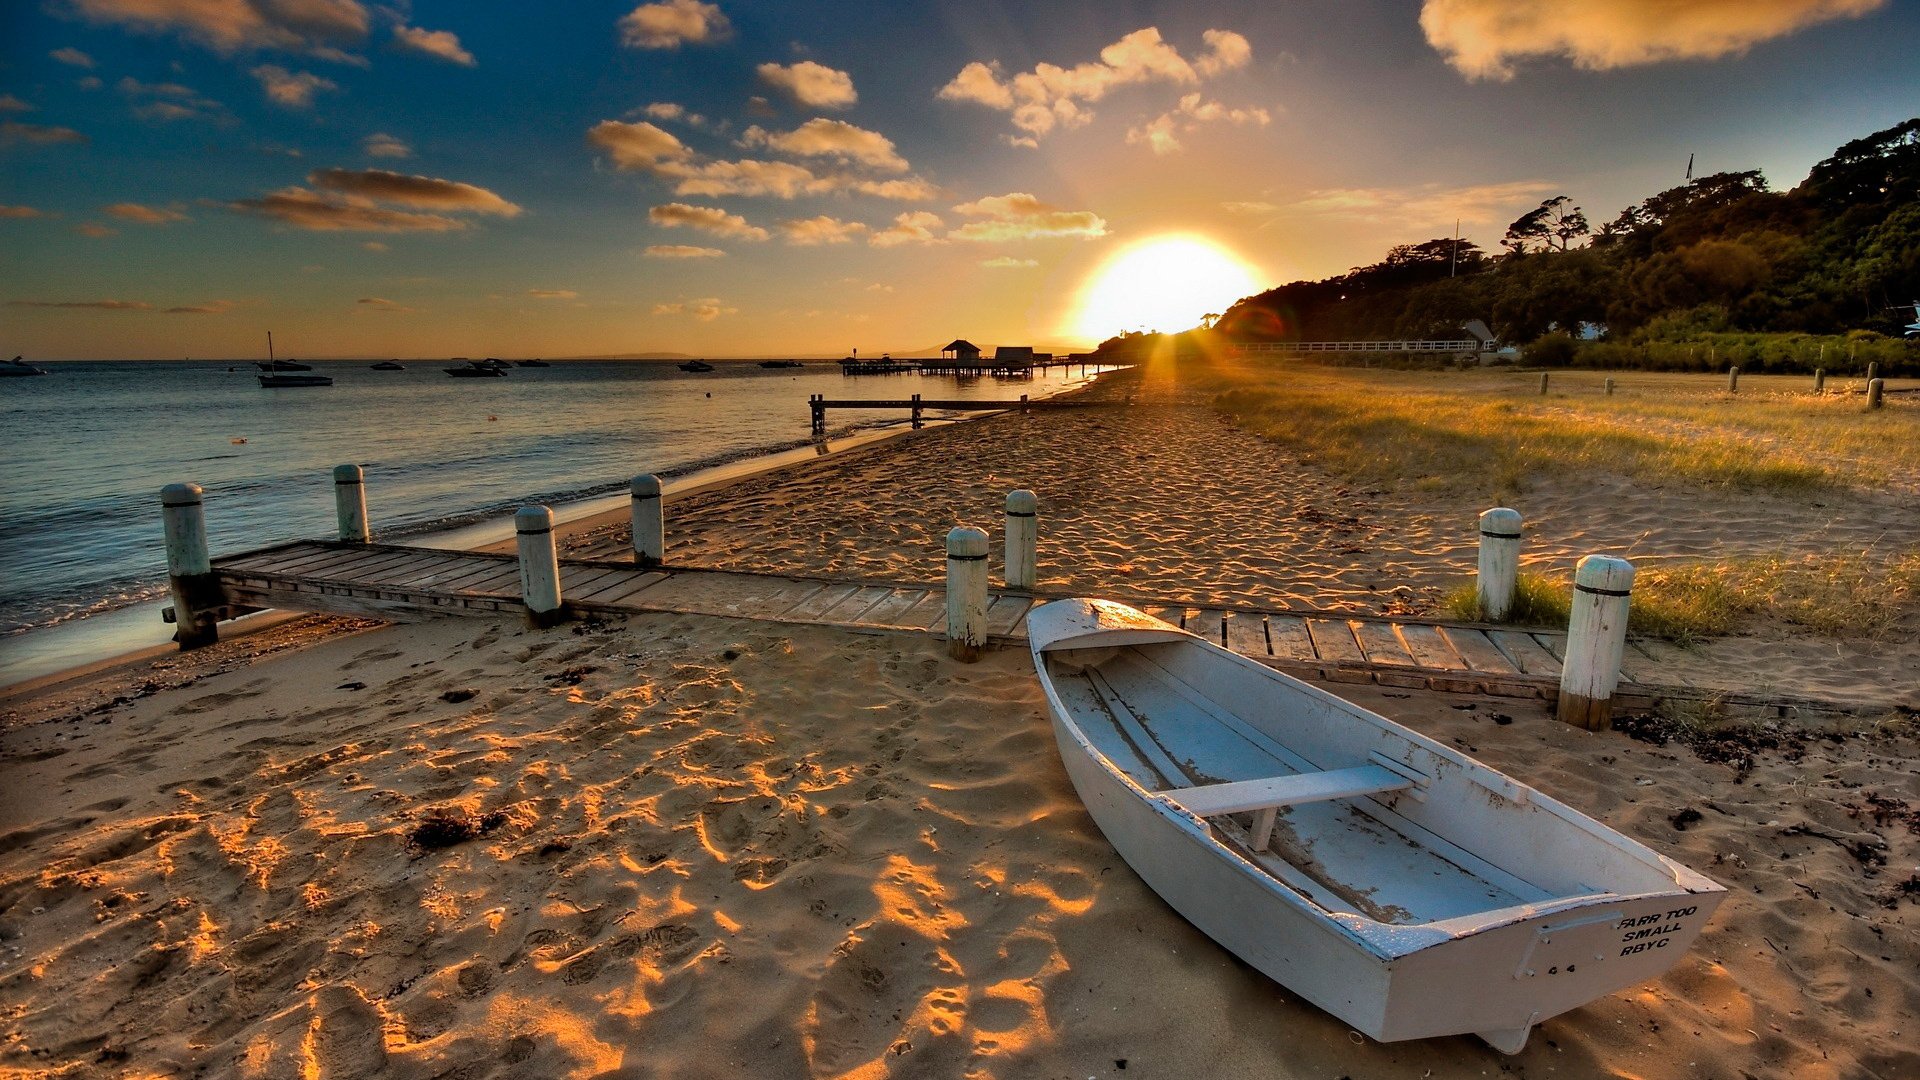 берег песок лодка солнце закат вода